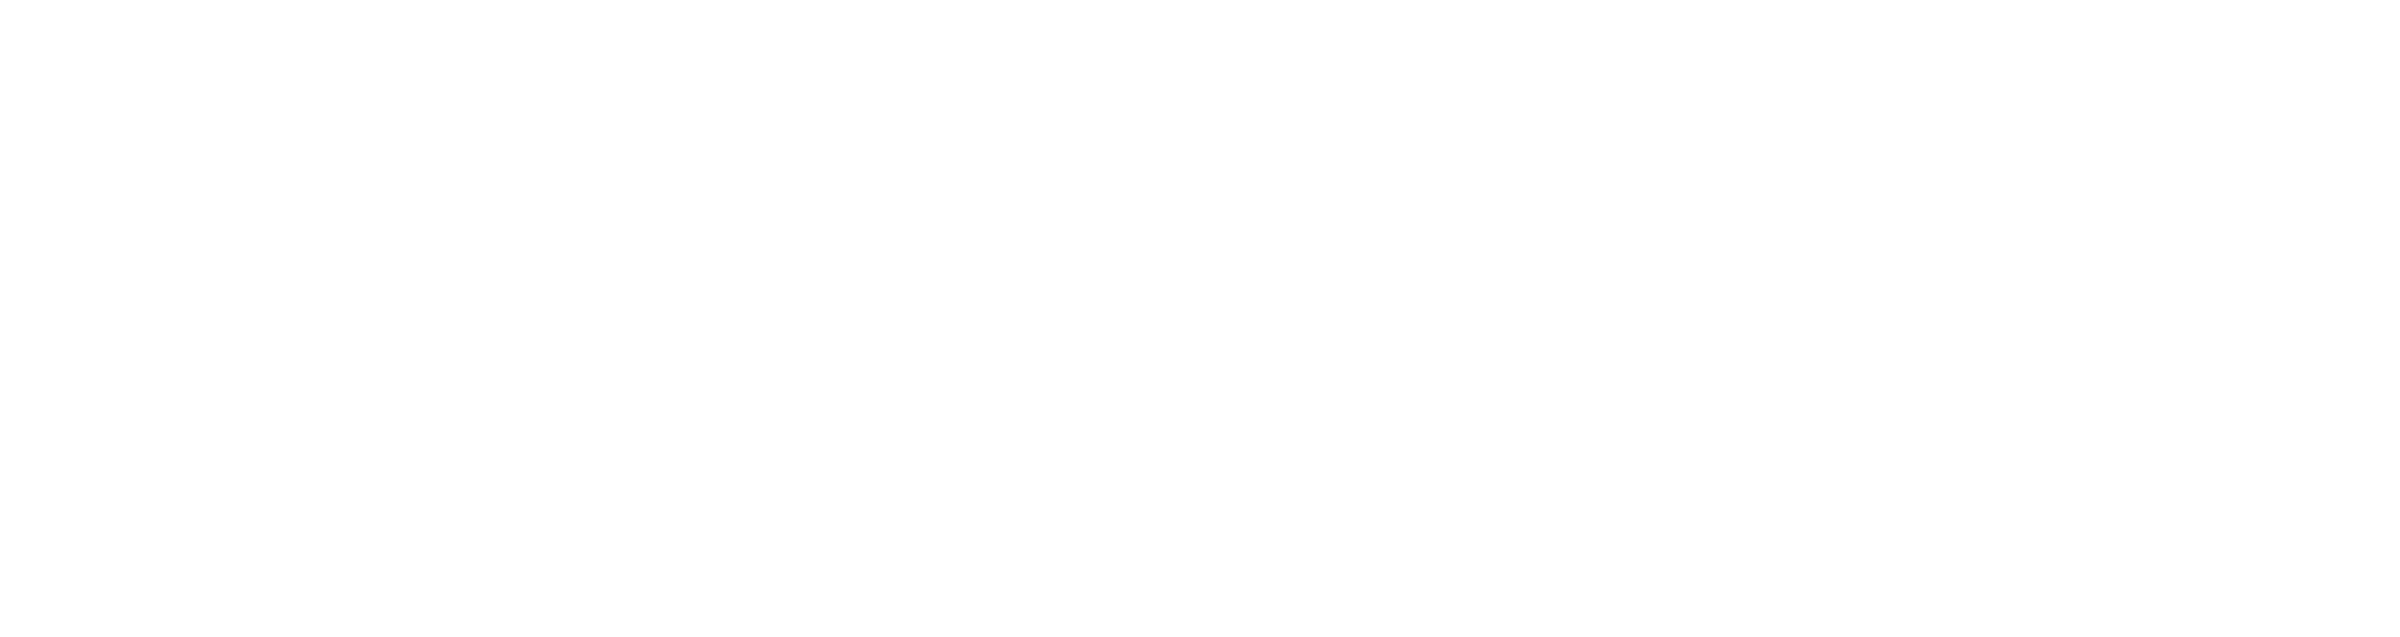 Logotipo de ASTM Cannabis Services